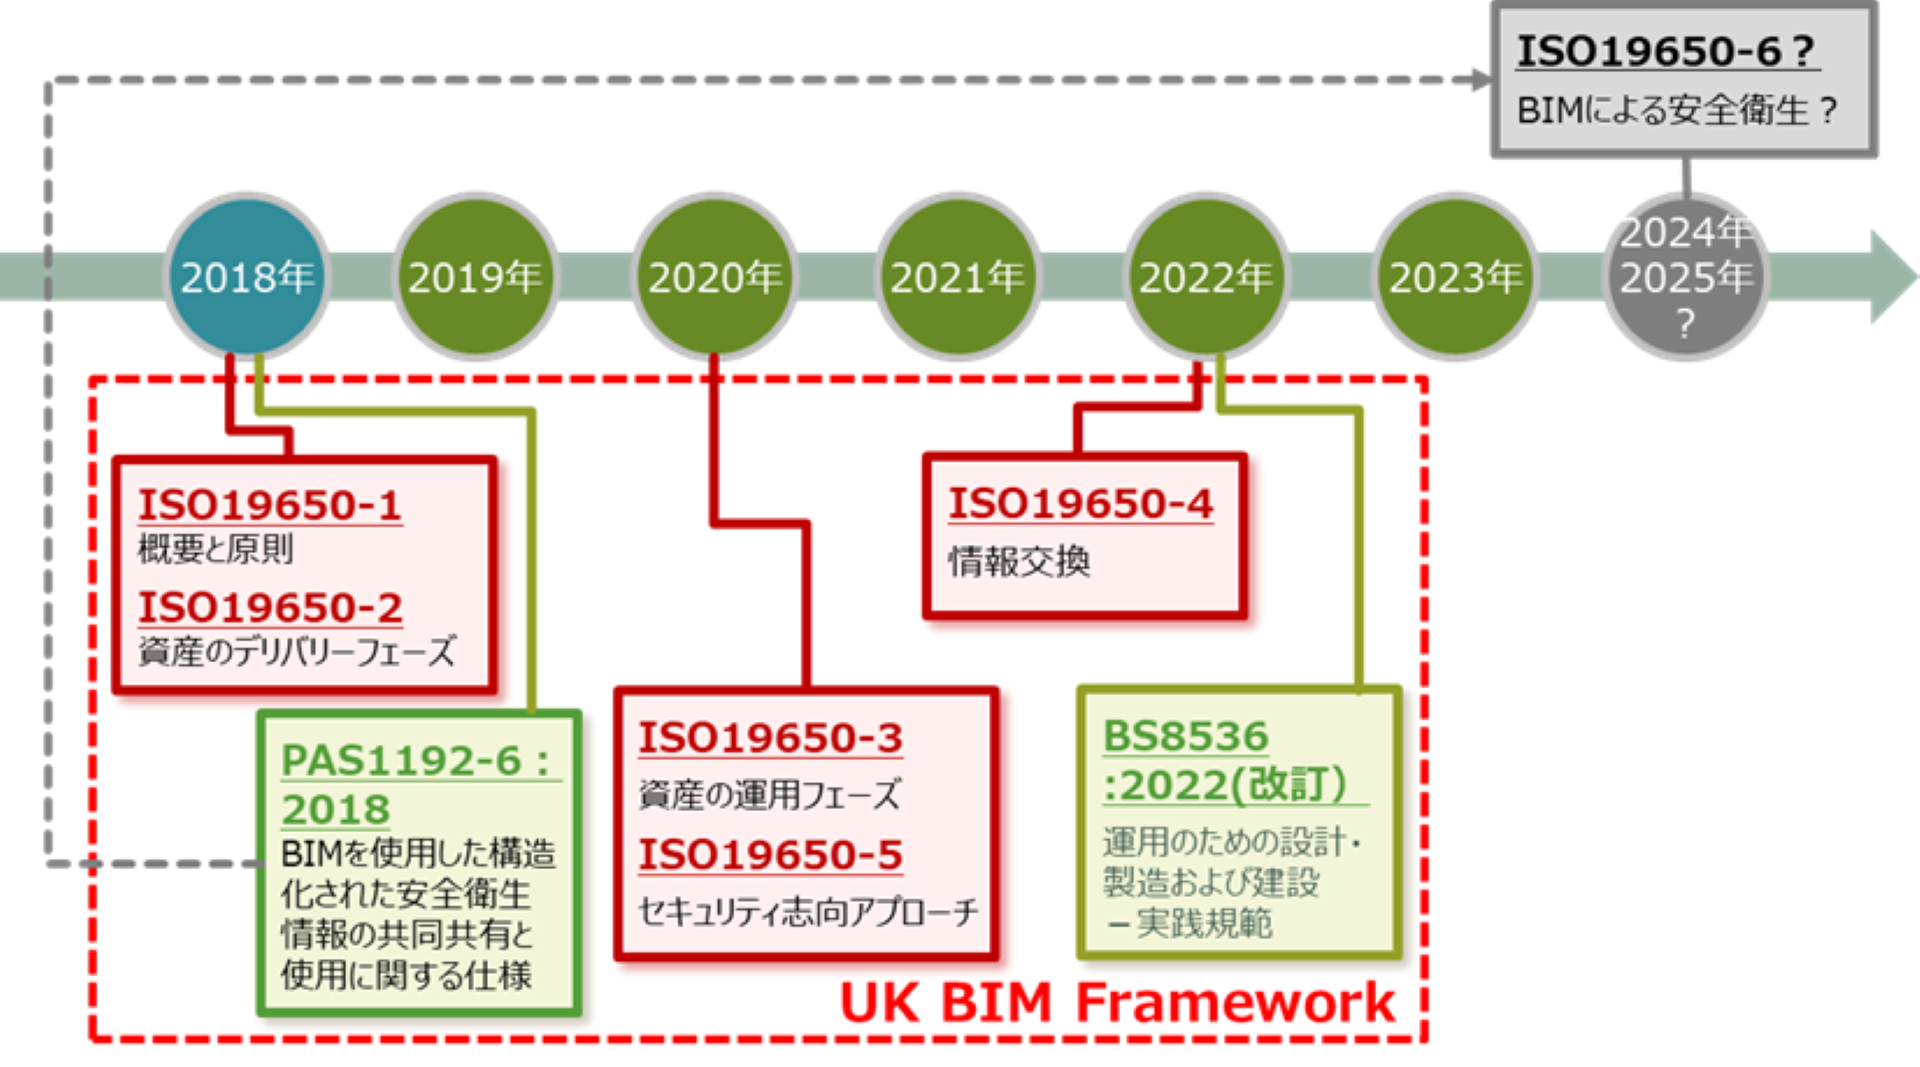 図-1 ISO19650関連の規格と発行年度